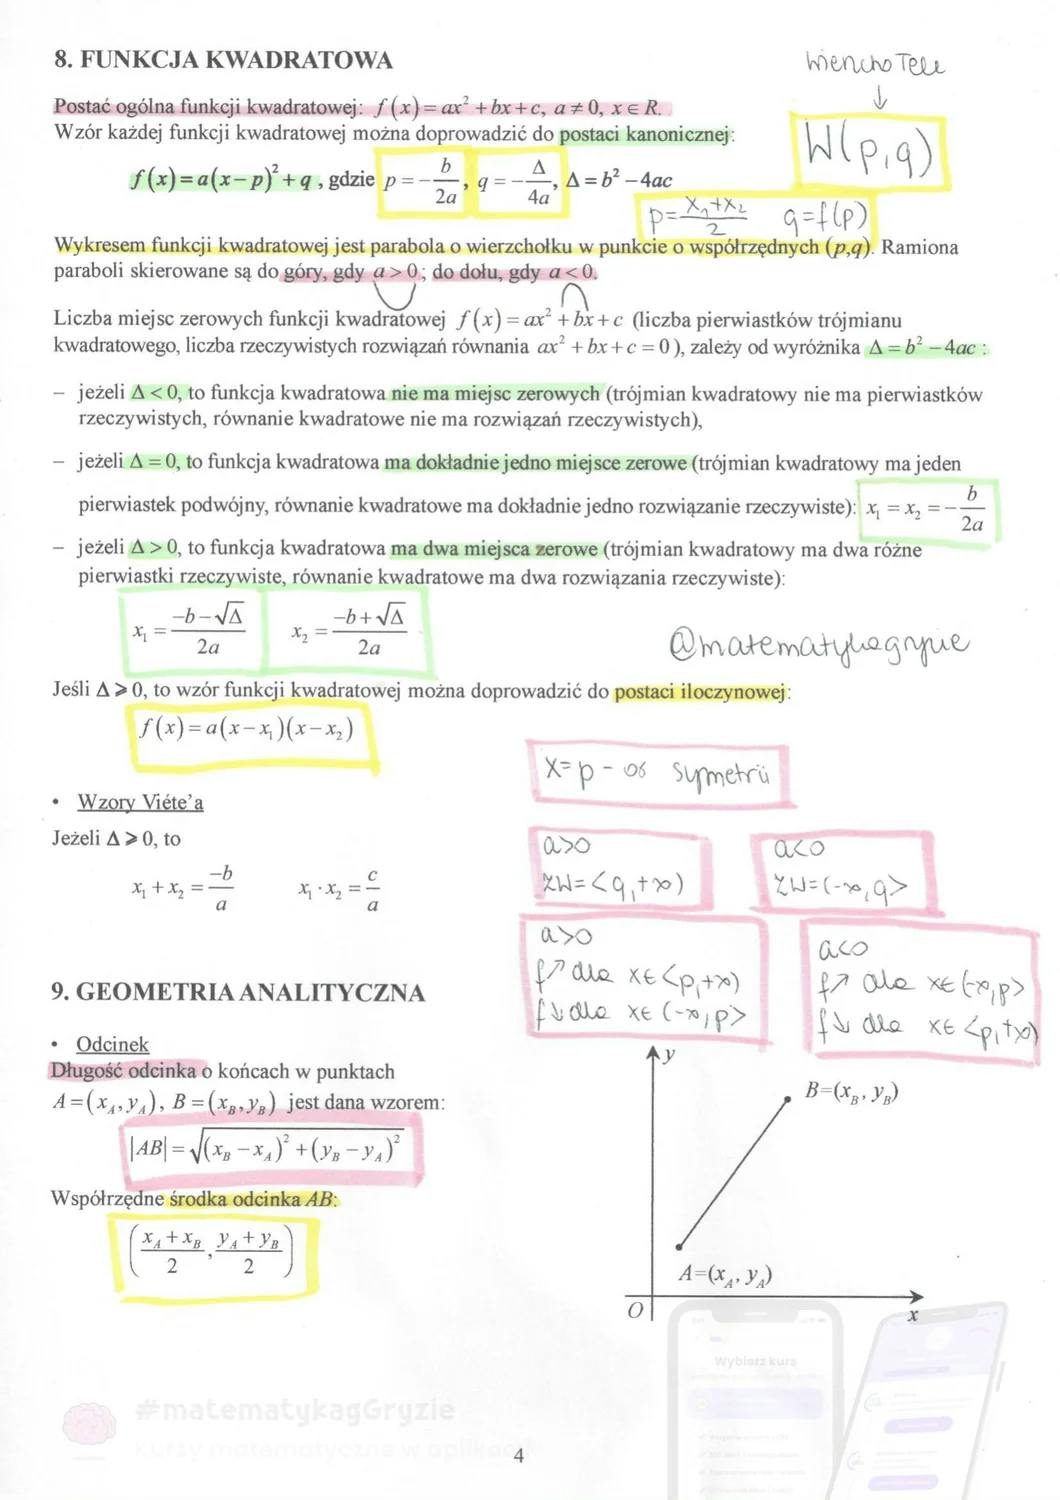 Obrazek dla artykułu pod tytułem Notatki z matematyki na egzamin ósmoklasisty i brakujące wzory w tablicach maturalnych